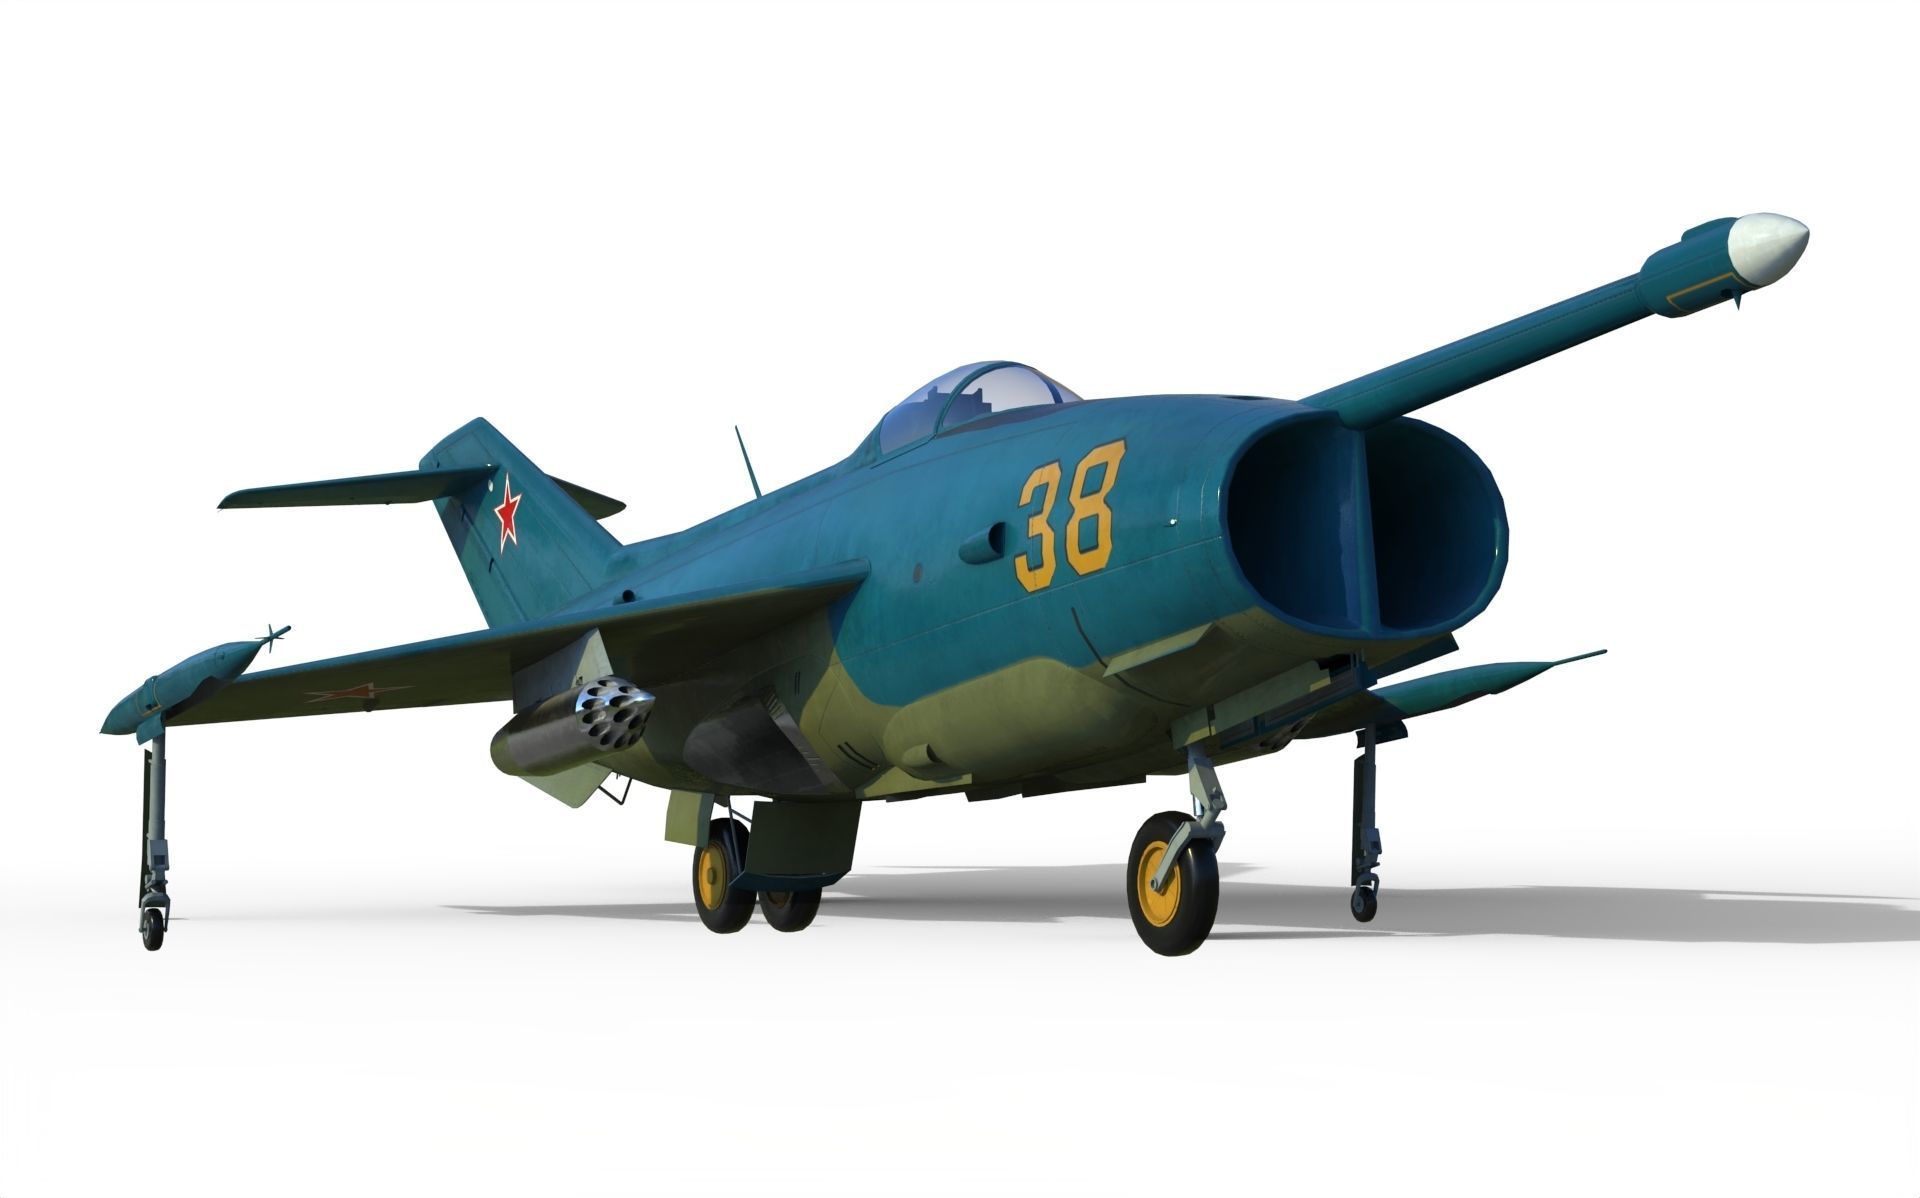 yakovlev-yak-36-vtol-fighter-3d-model-max-obj-fbx-c4d-blend-dae.jpg